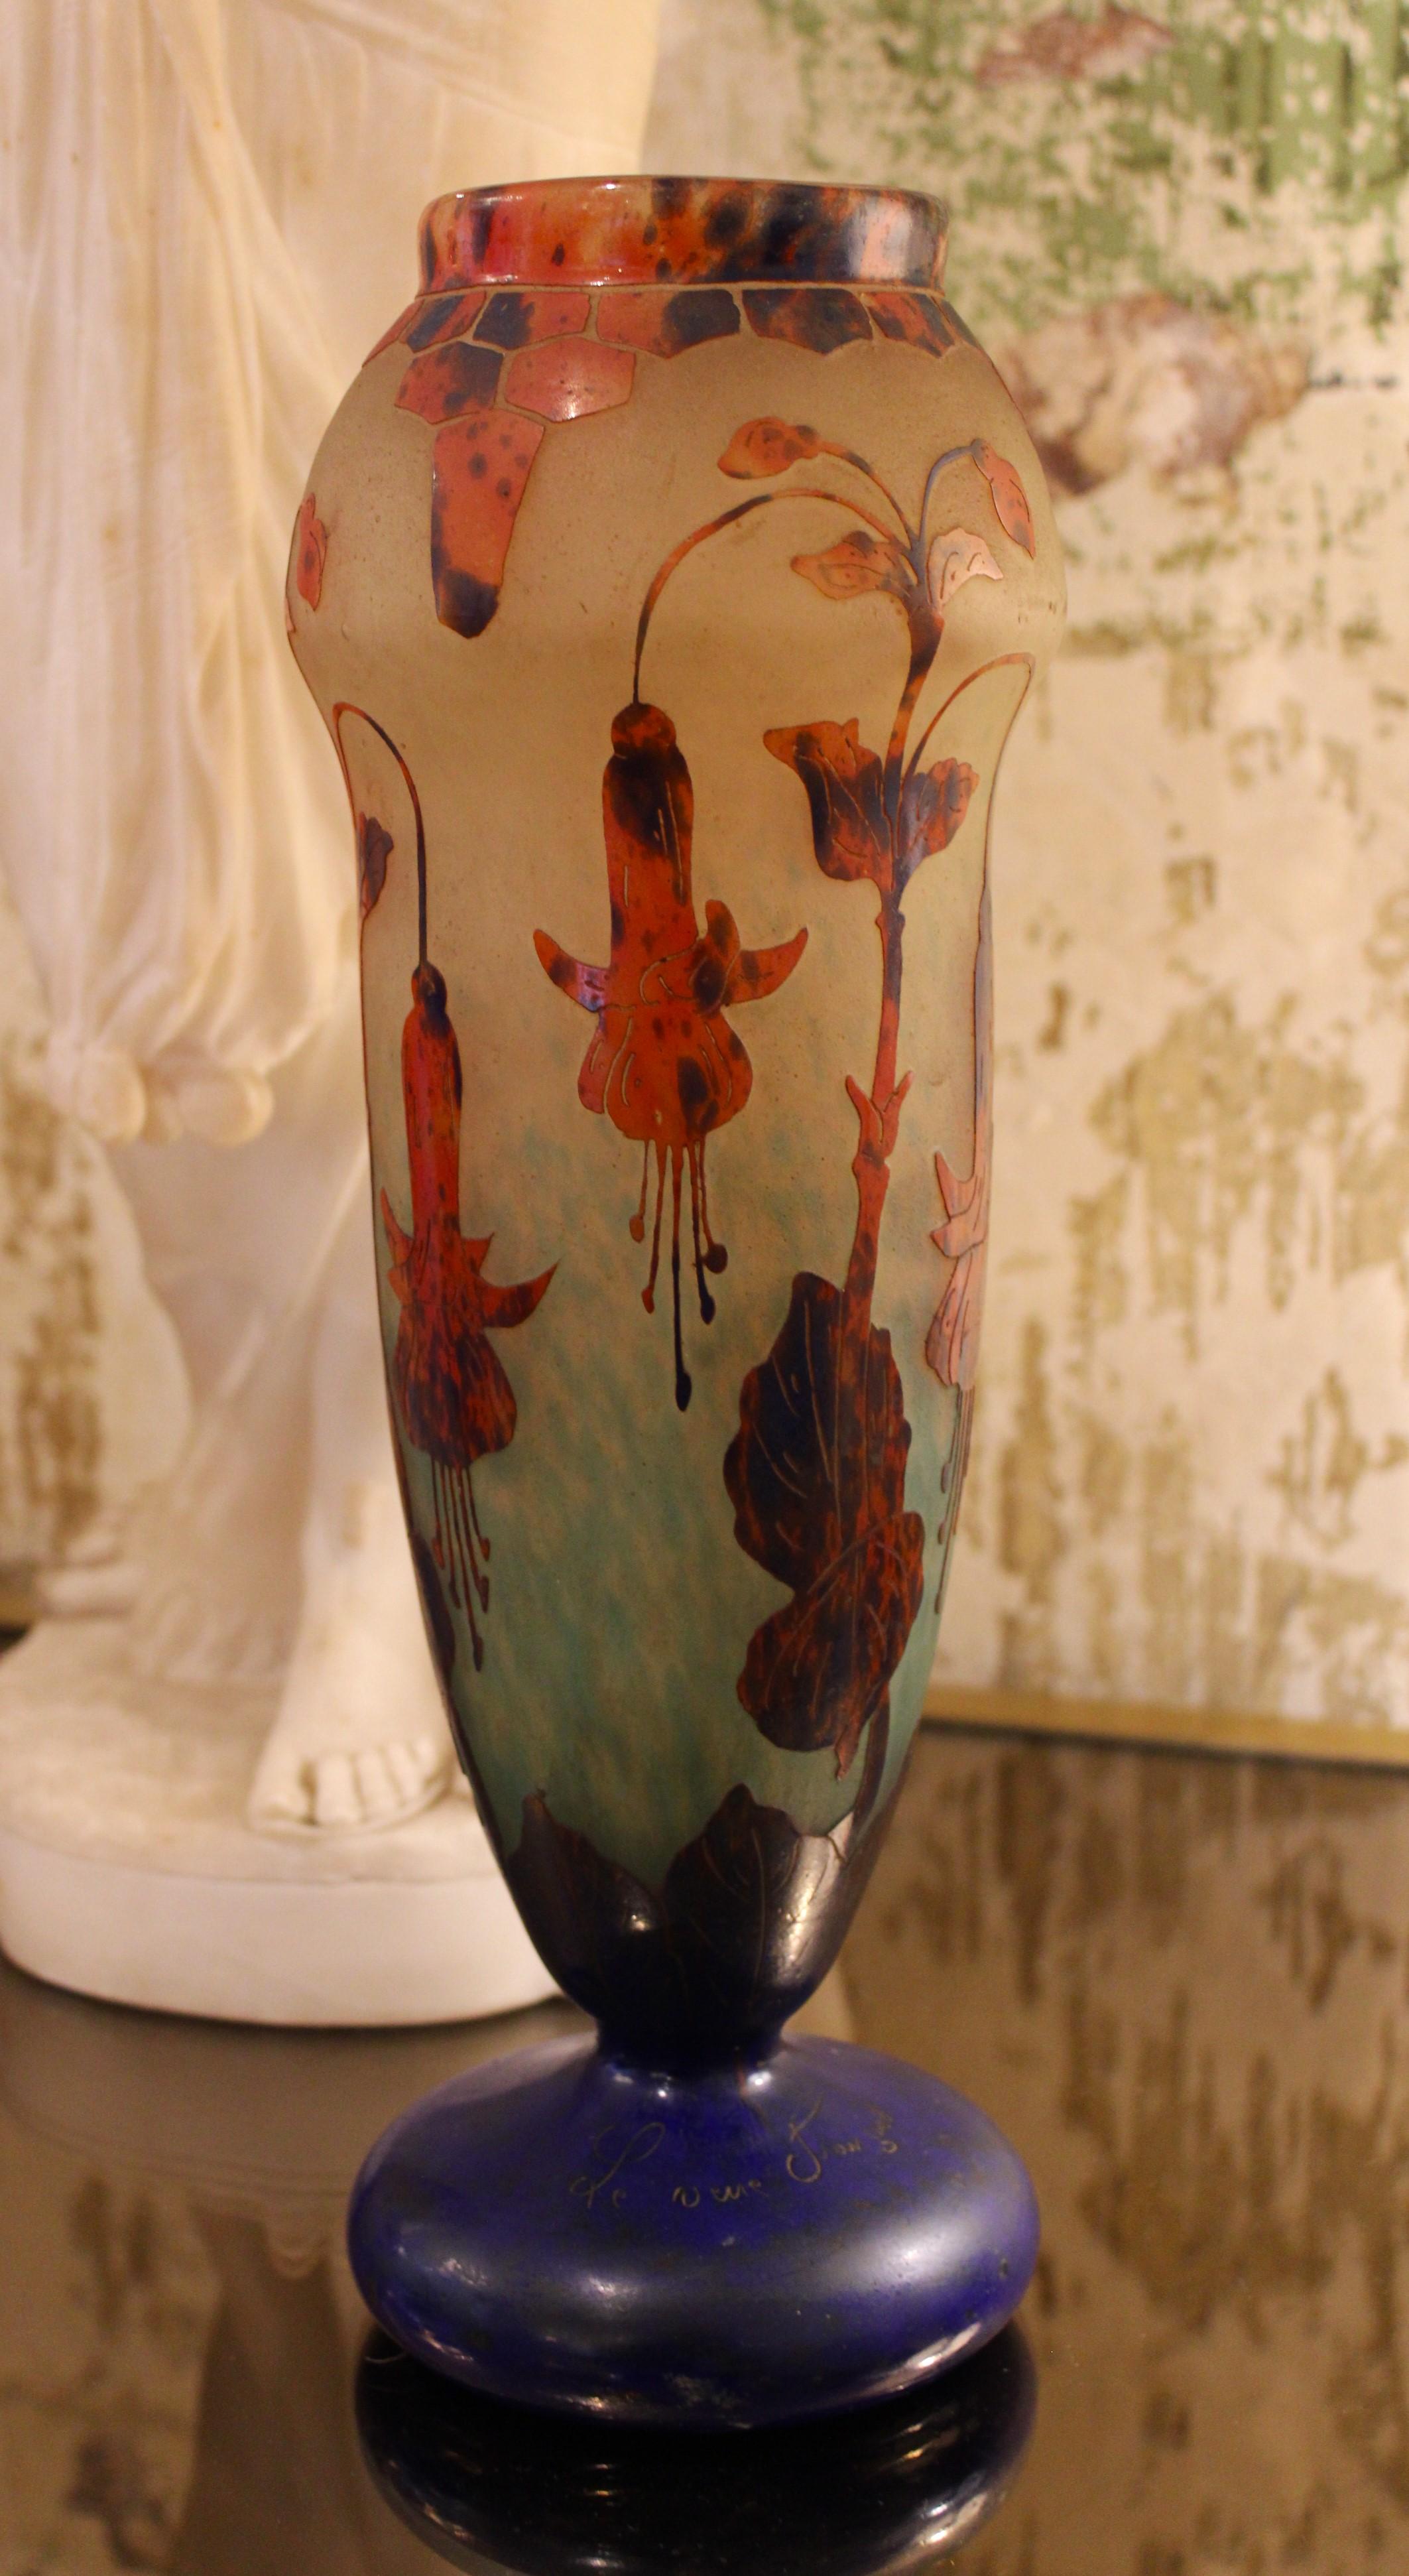 Vase mit Blumendekoration 
Signiert 